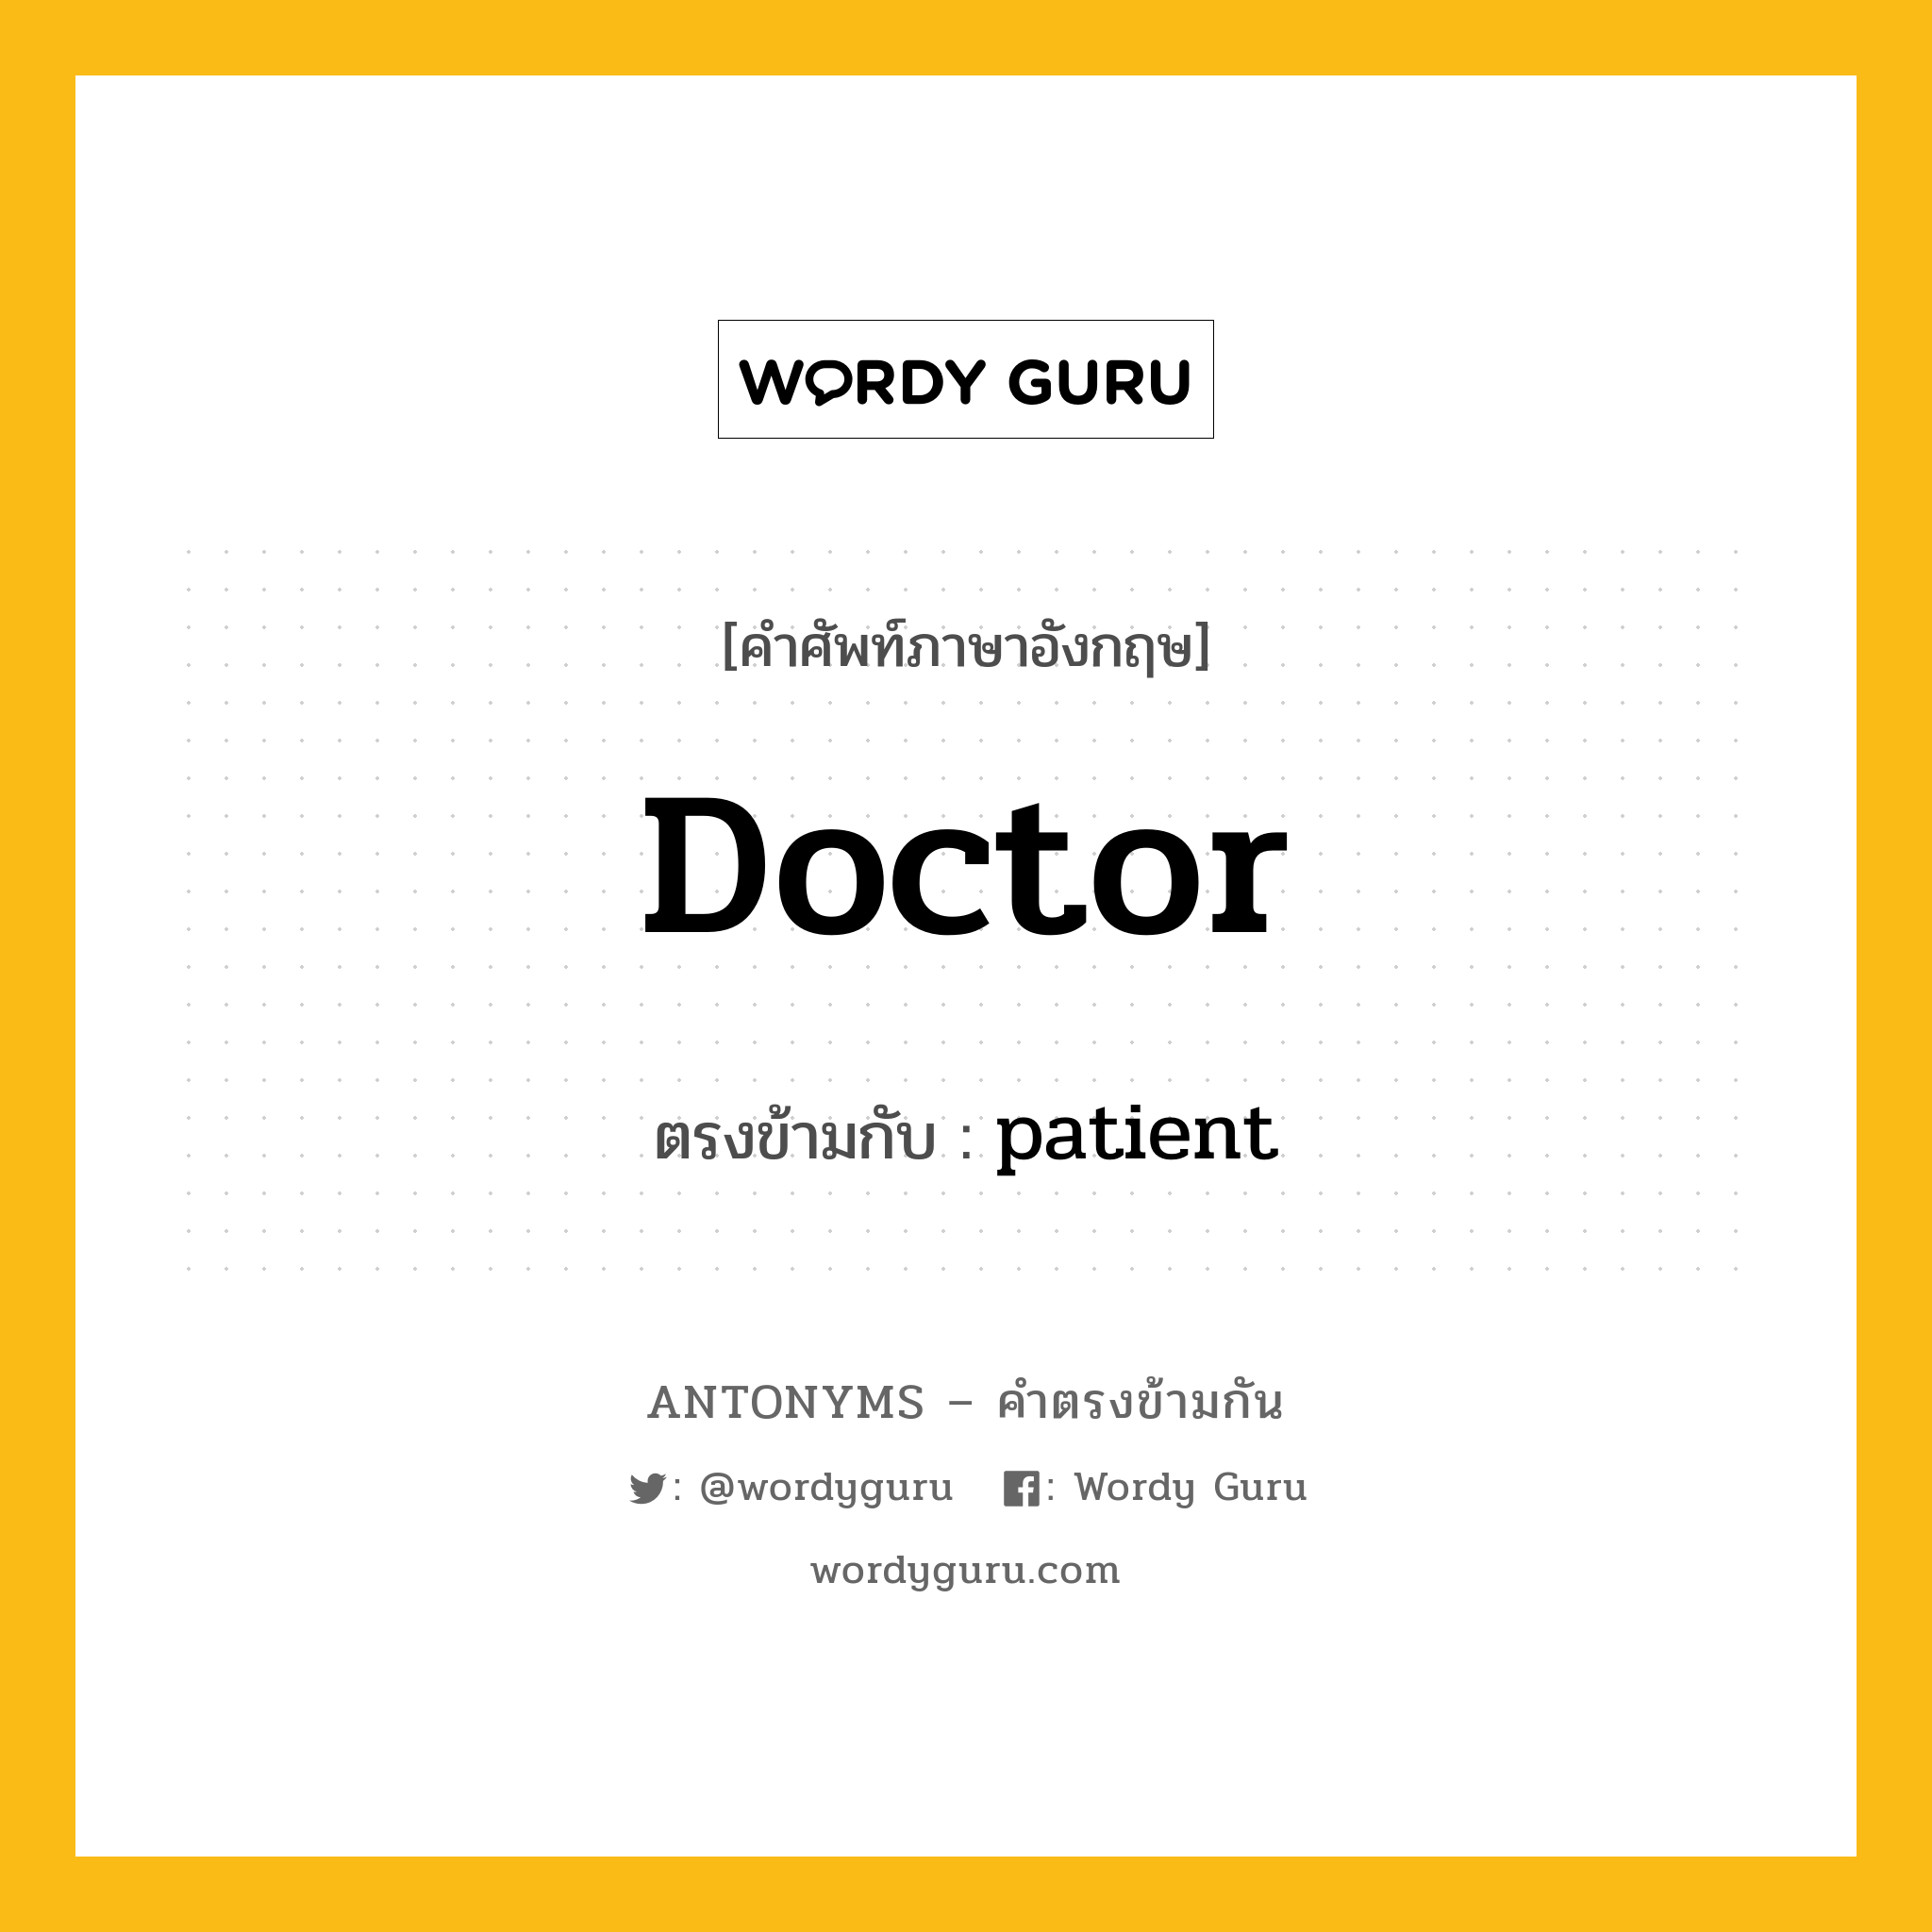 doctor เป็นคำตรงข้ามกับคำไหนบ้าง?, คำศัพท์ภาษาอังกฤษ doctor ตรงข้ามกับ patient หมวด patient